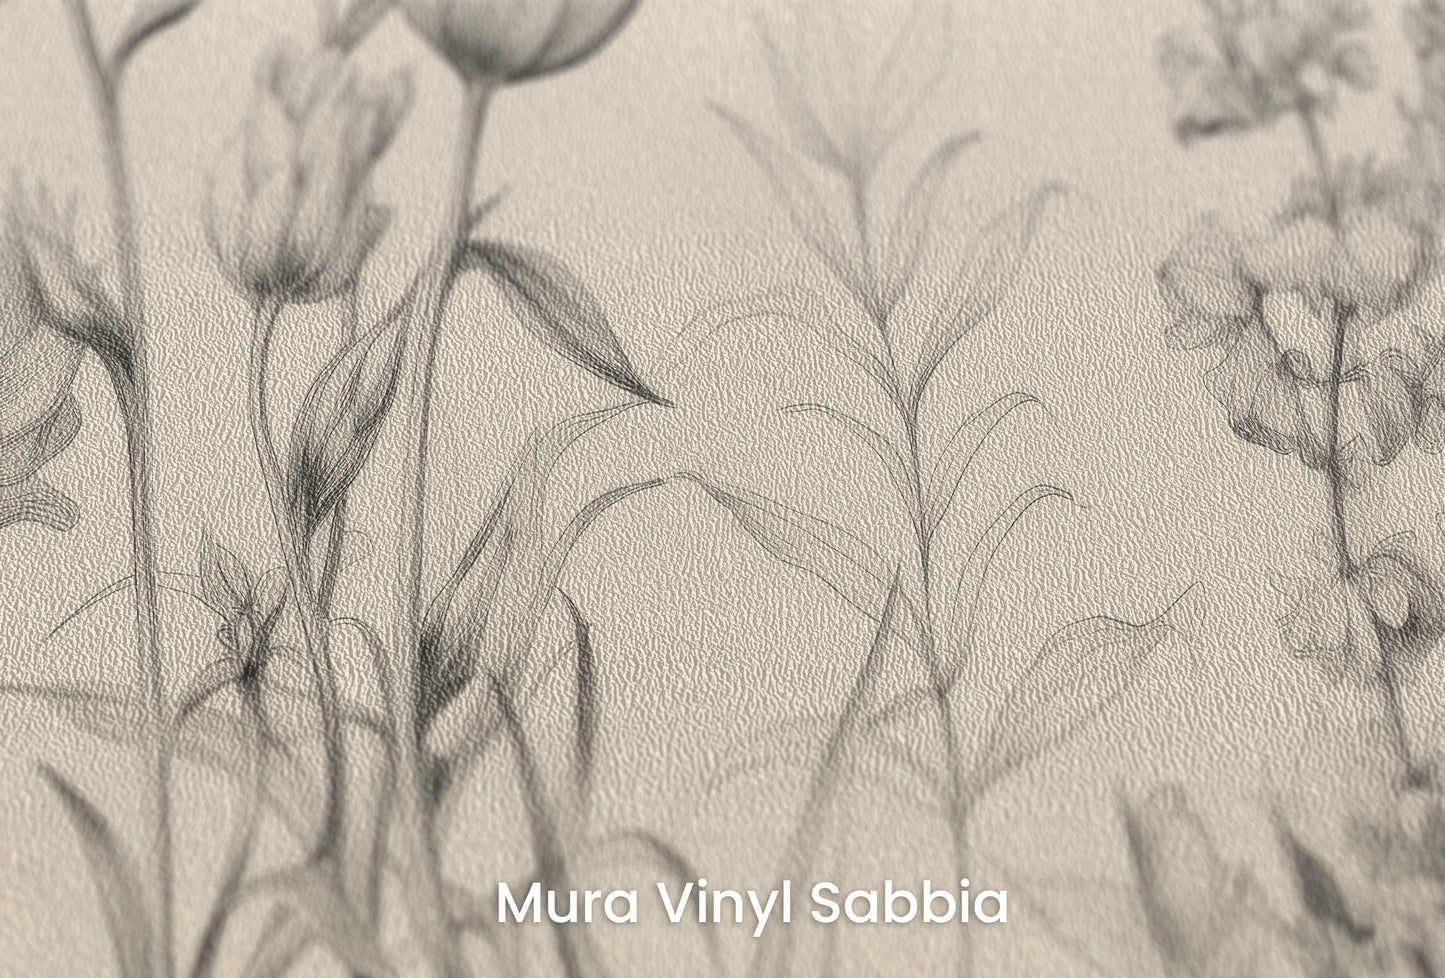 Zbliżenie na artystyczną fototapetę o nazwie Floral Array na podłożu Mura Vinyl Sabbia struktura grubego ziarna piasku.